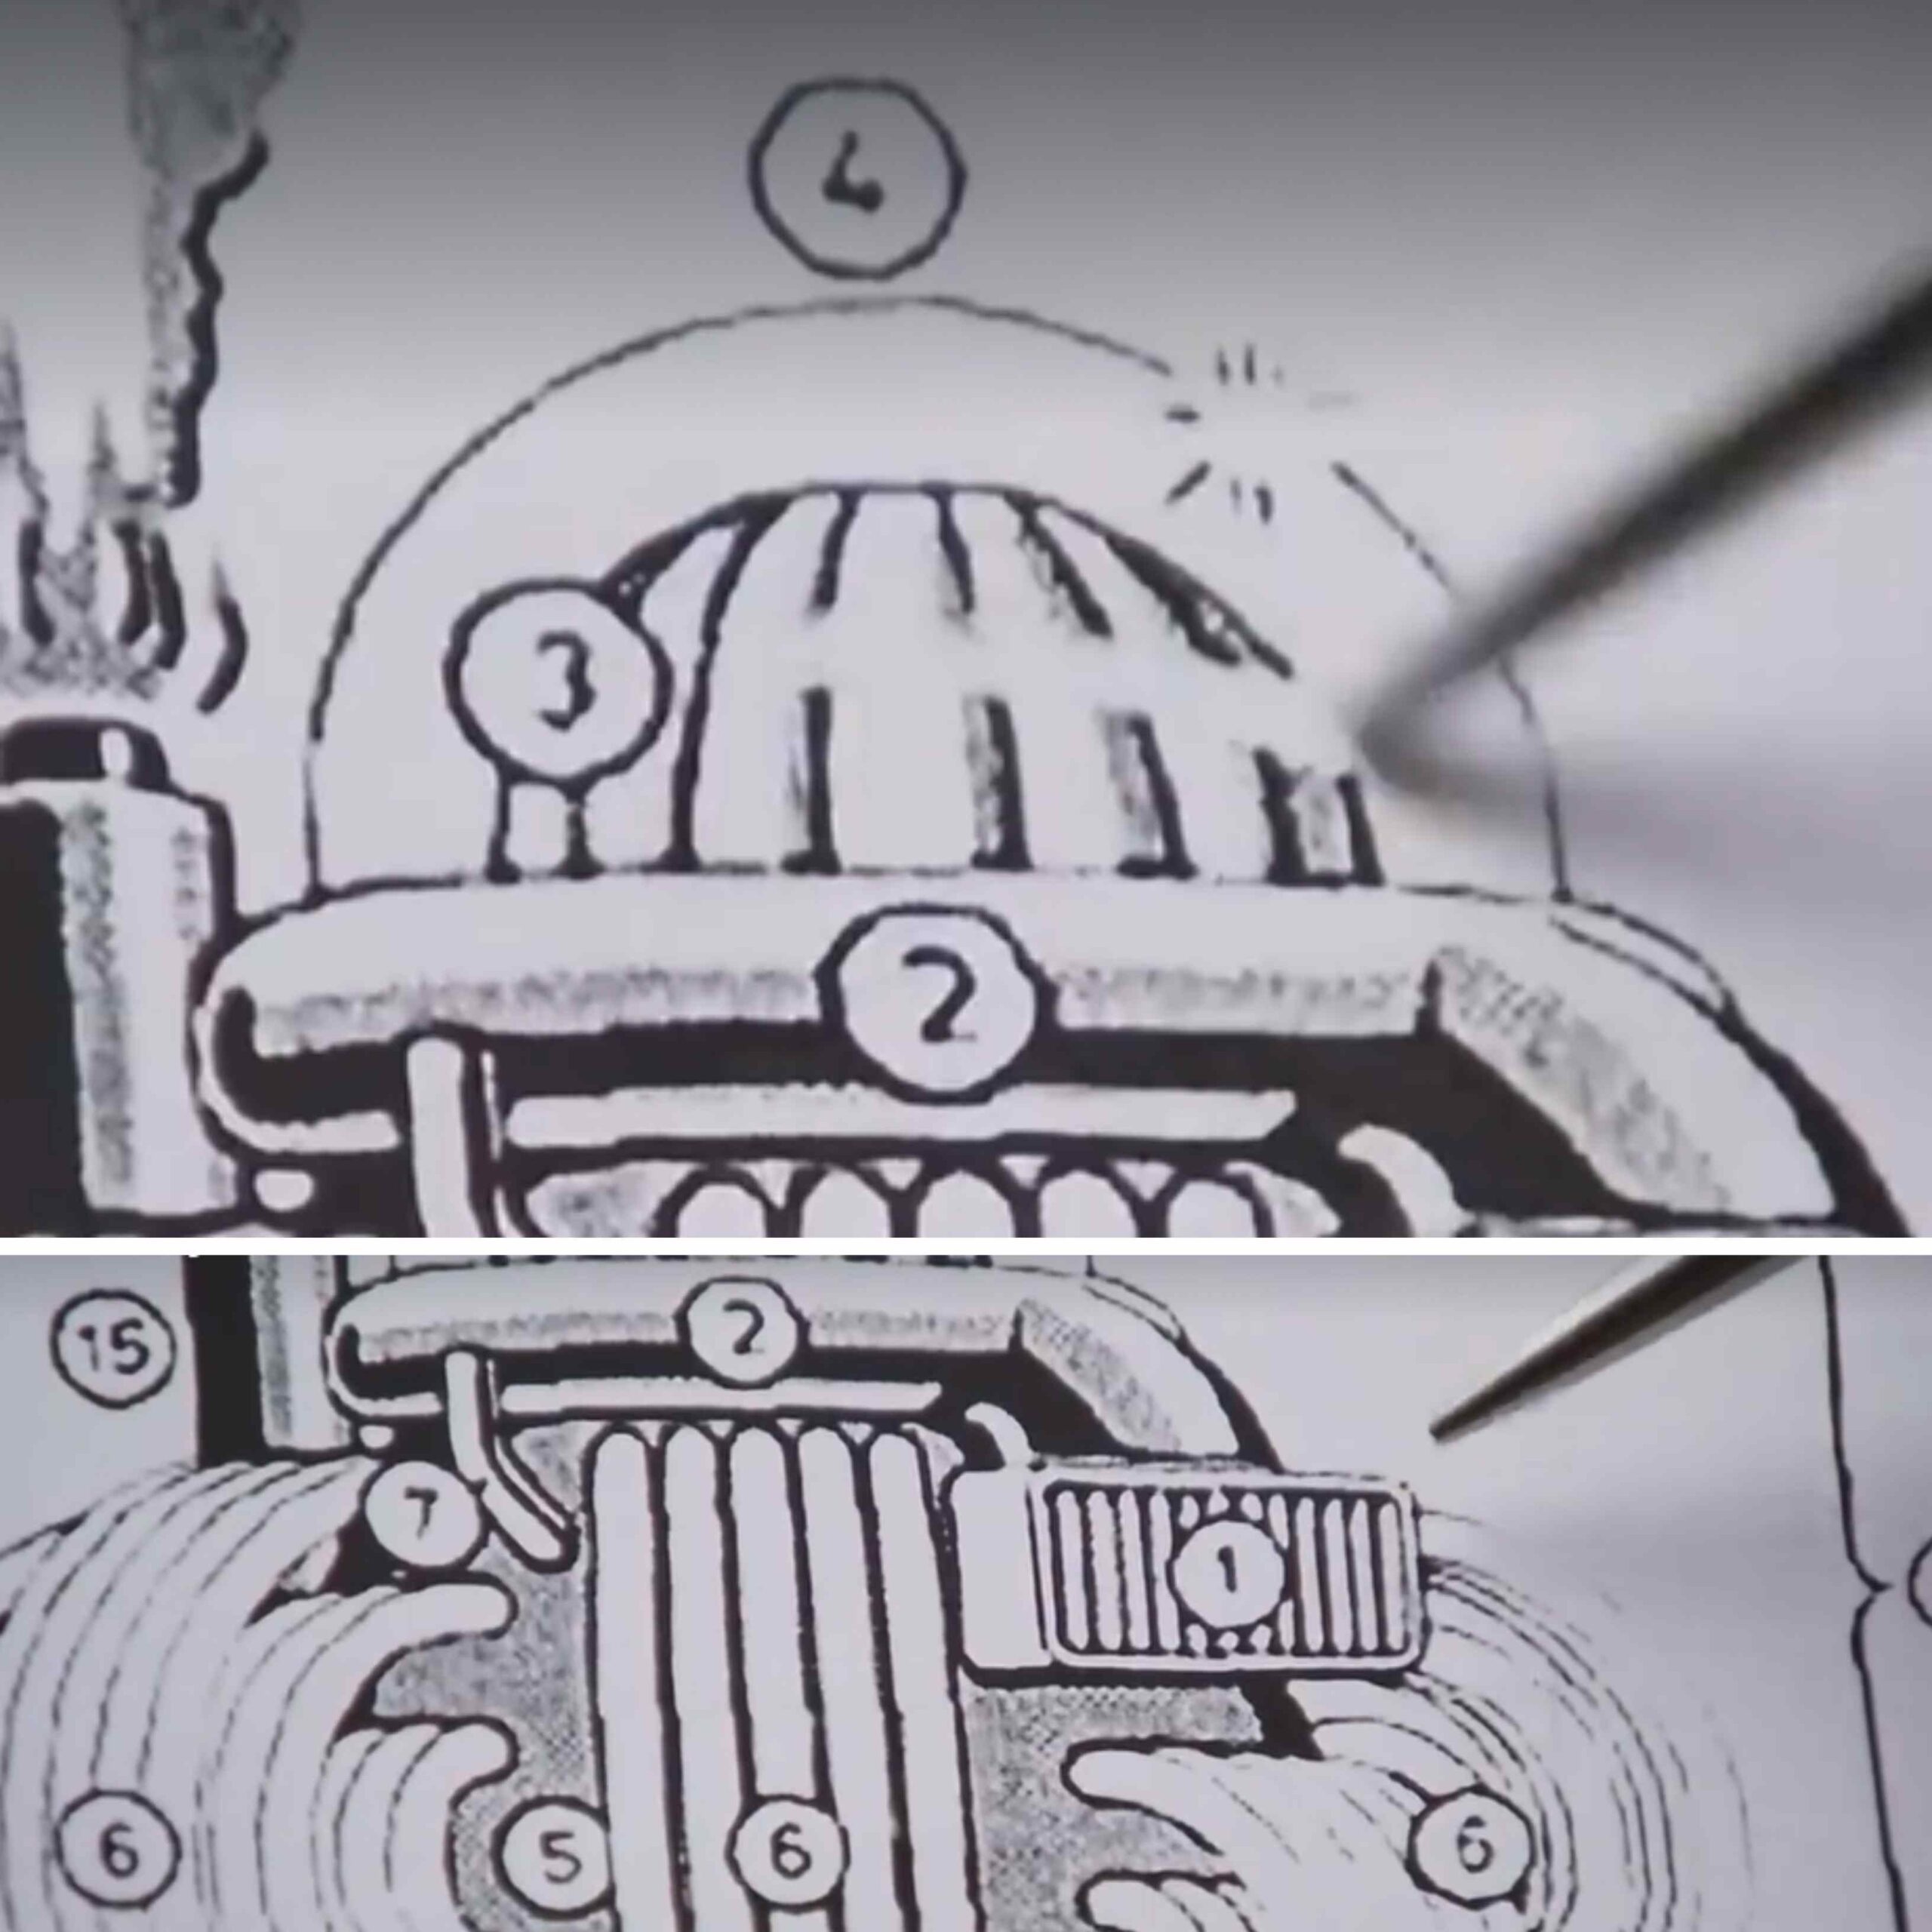 The Manna Machine: La misteriosa máquina alienígena que producía comida para la gente del desierto 3